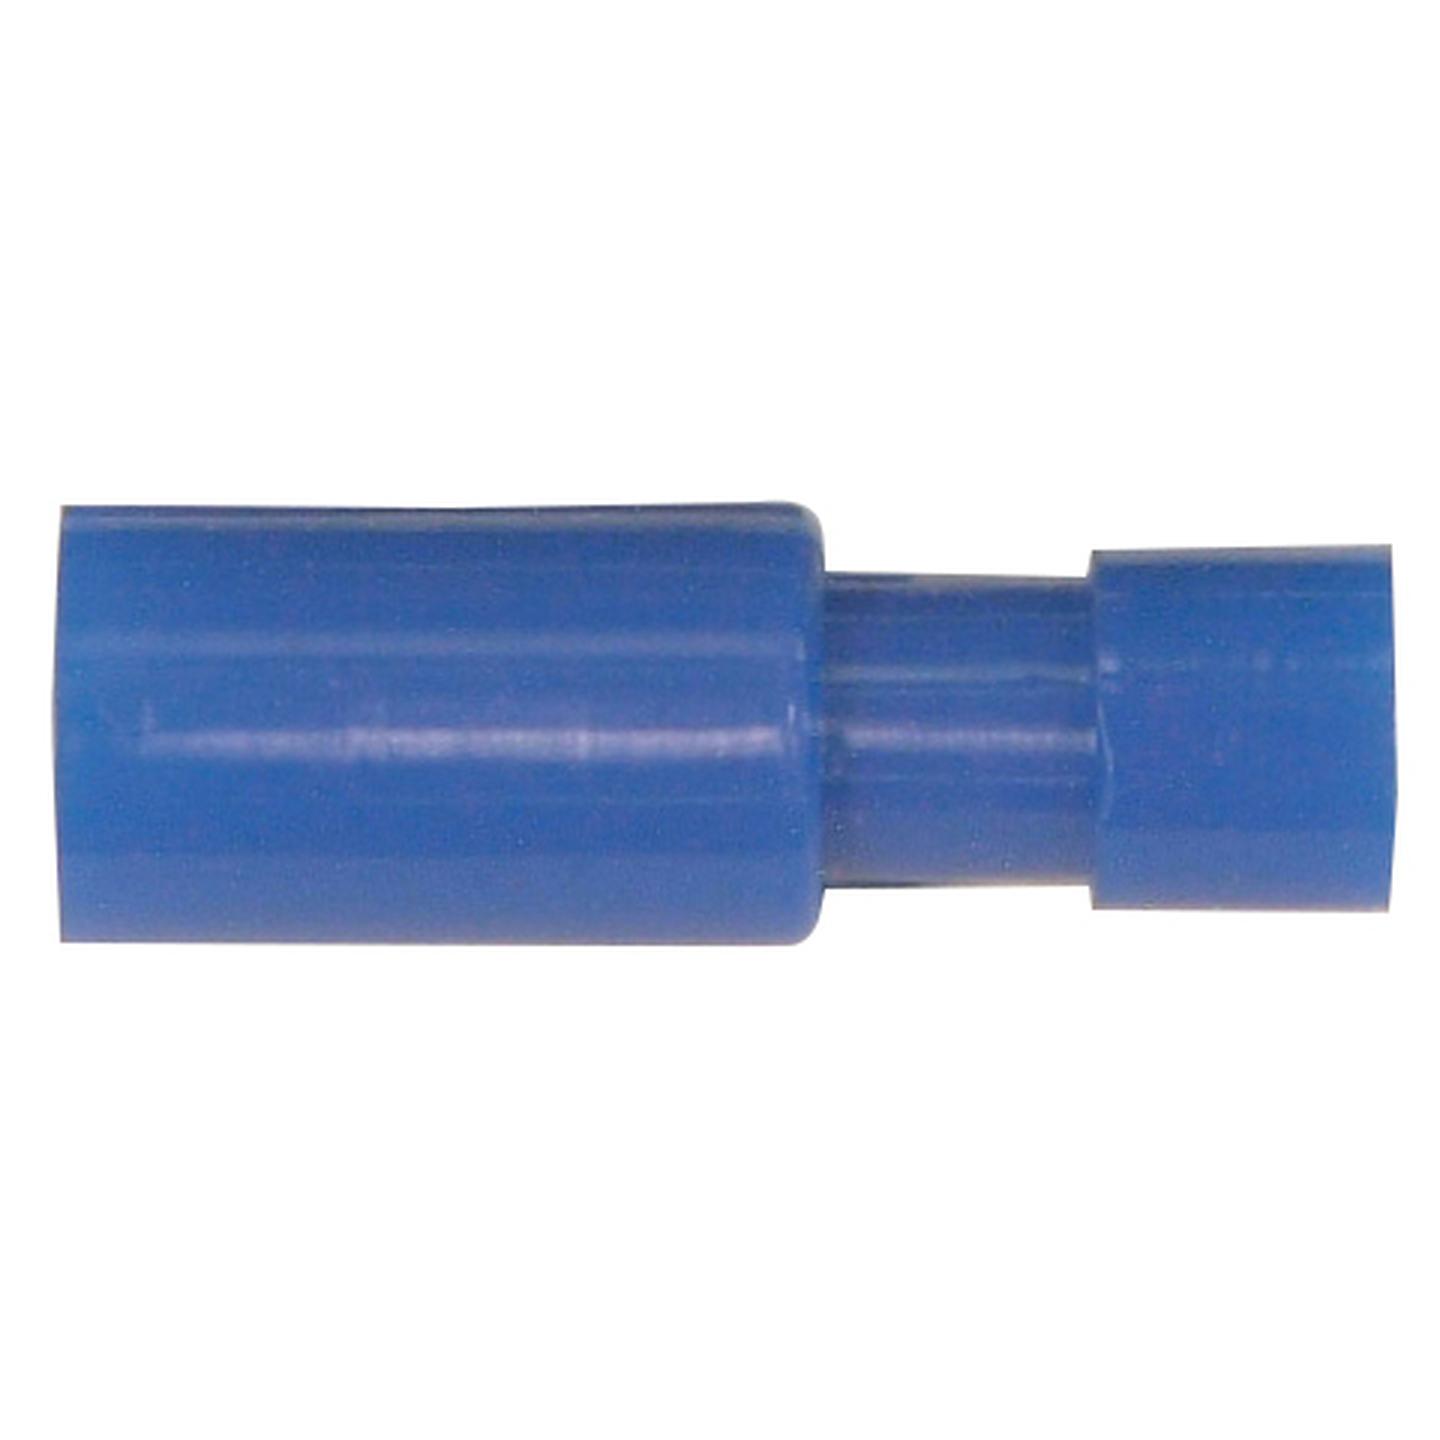 4mm Bullet Female - Blue - Pack of 100